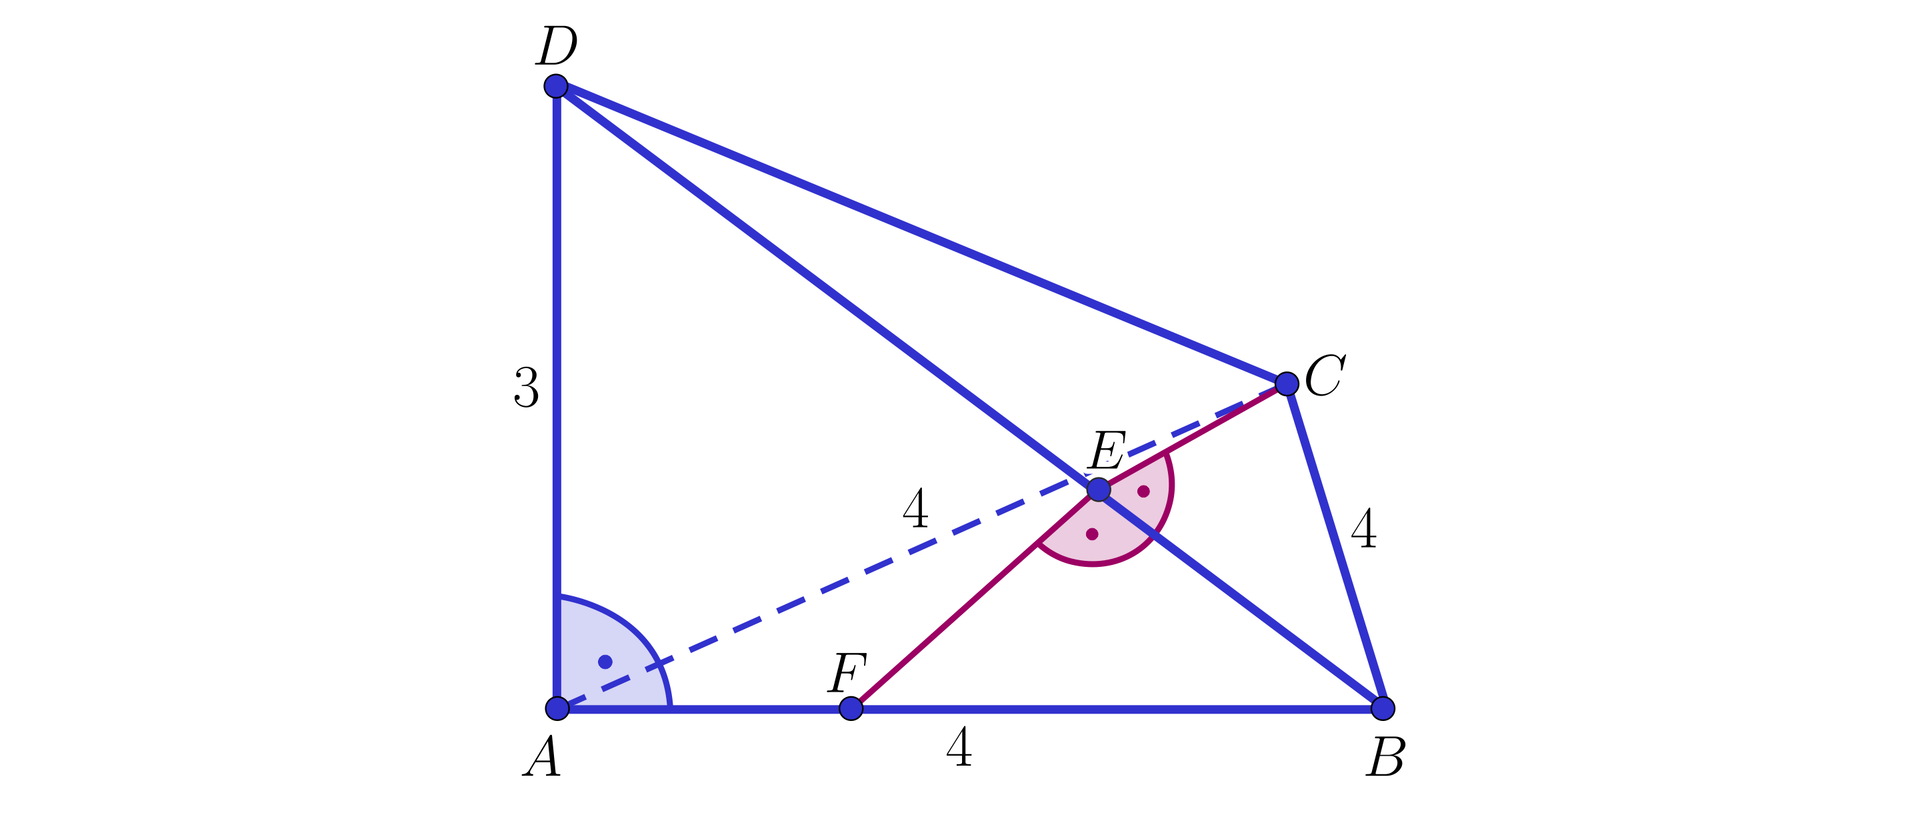 Na ilustracji przedstawiono czworościan ABCD. Długość krawędzi podstawy wynosi 4, natomiast długość krawędzi bocznej wynosi trzy. Krawędź boczna AD jest nachylona do krawędzi bocznej pod kątem prostym. Na krawędzi Ab zaznaczono punkt F. Z punktu F oraz wierzchołka C poprowadzono proste prostopadłe do krawędzi bocznej BD w punkcie E.